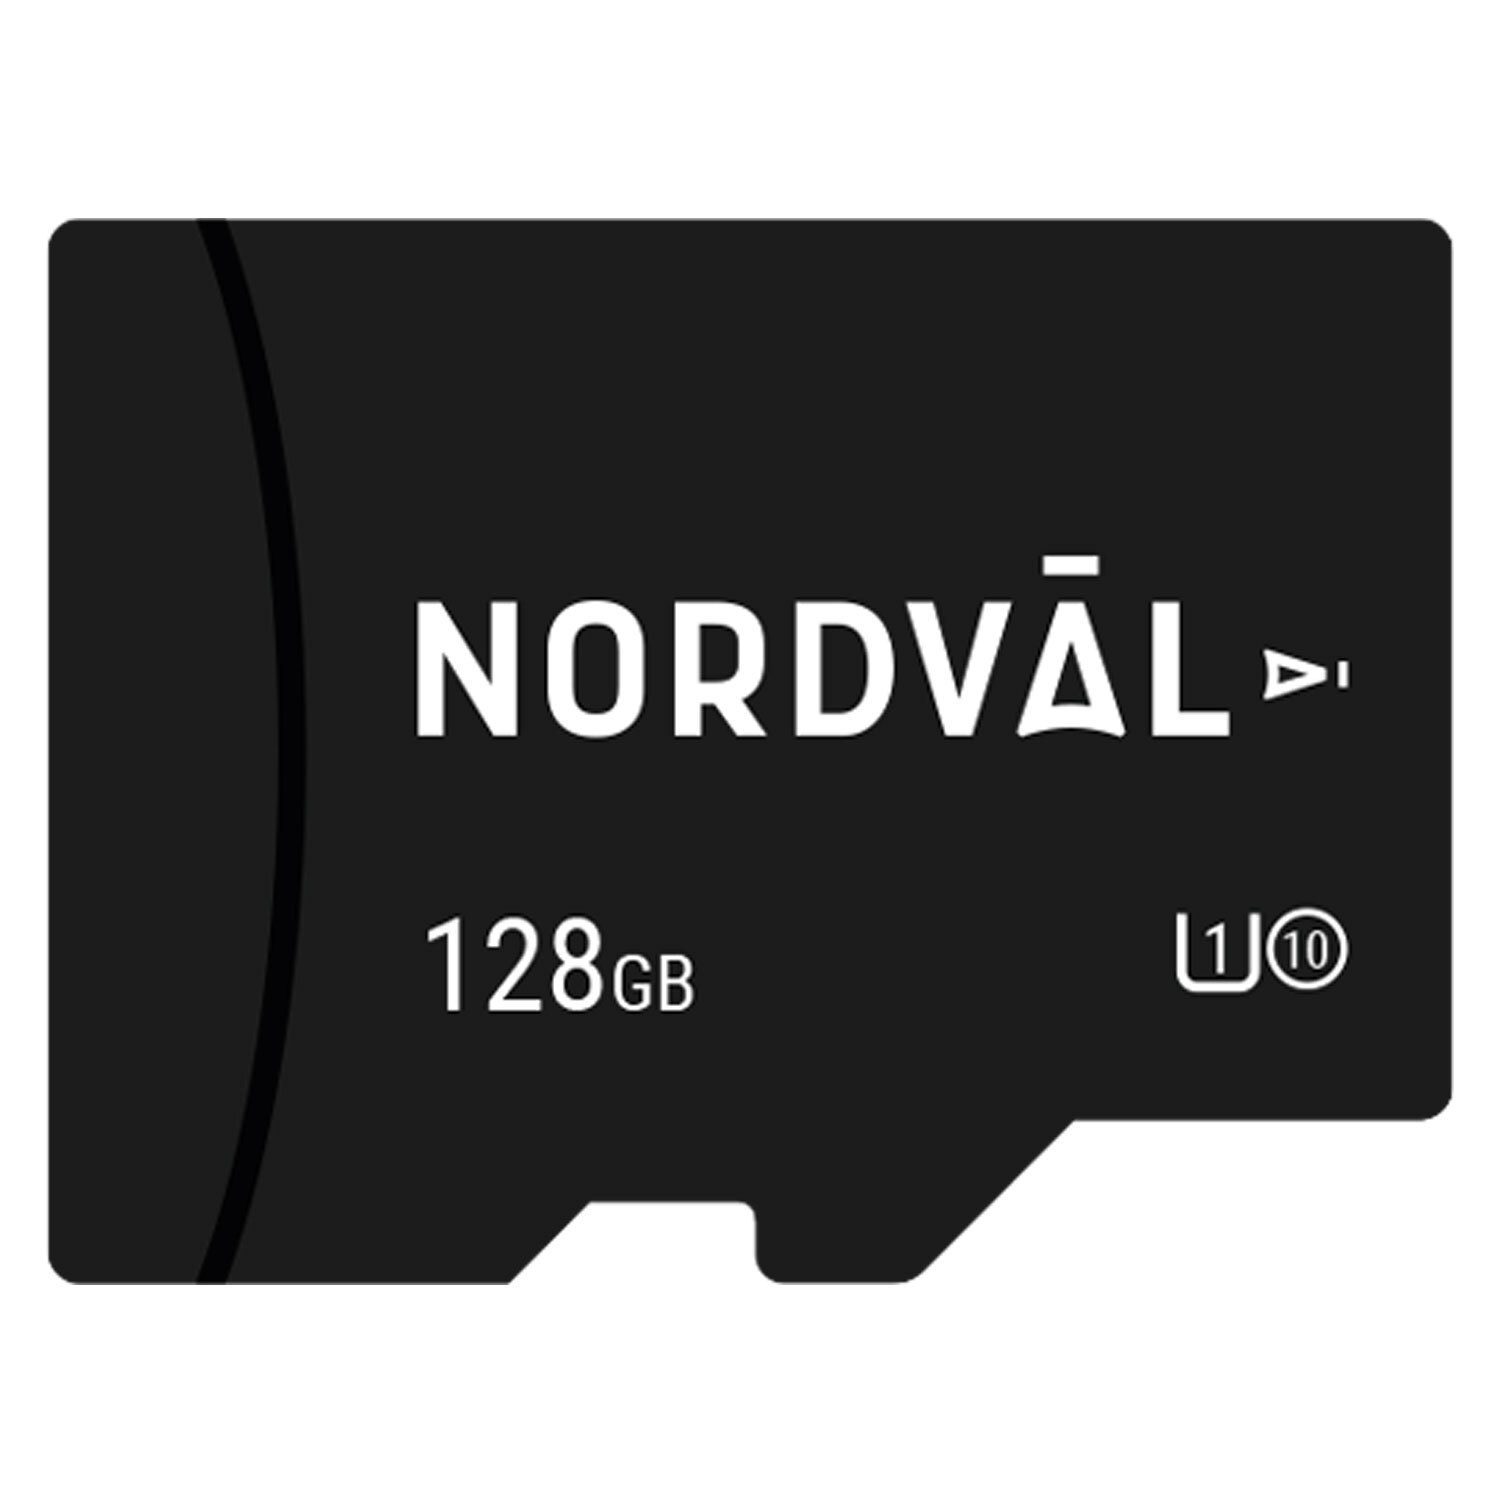 Nordväl Micro SD geheugenkaart 128GB